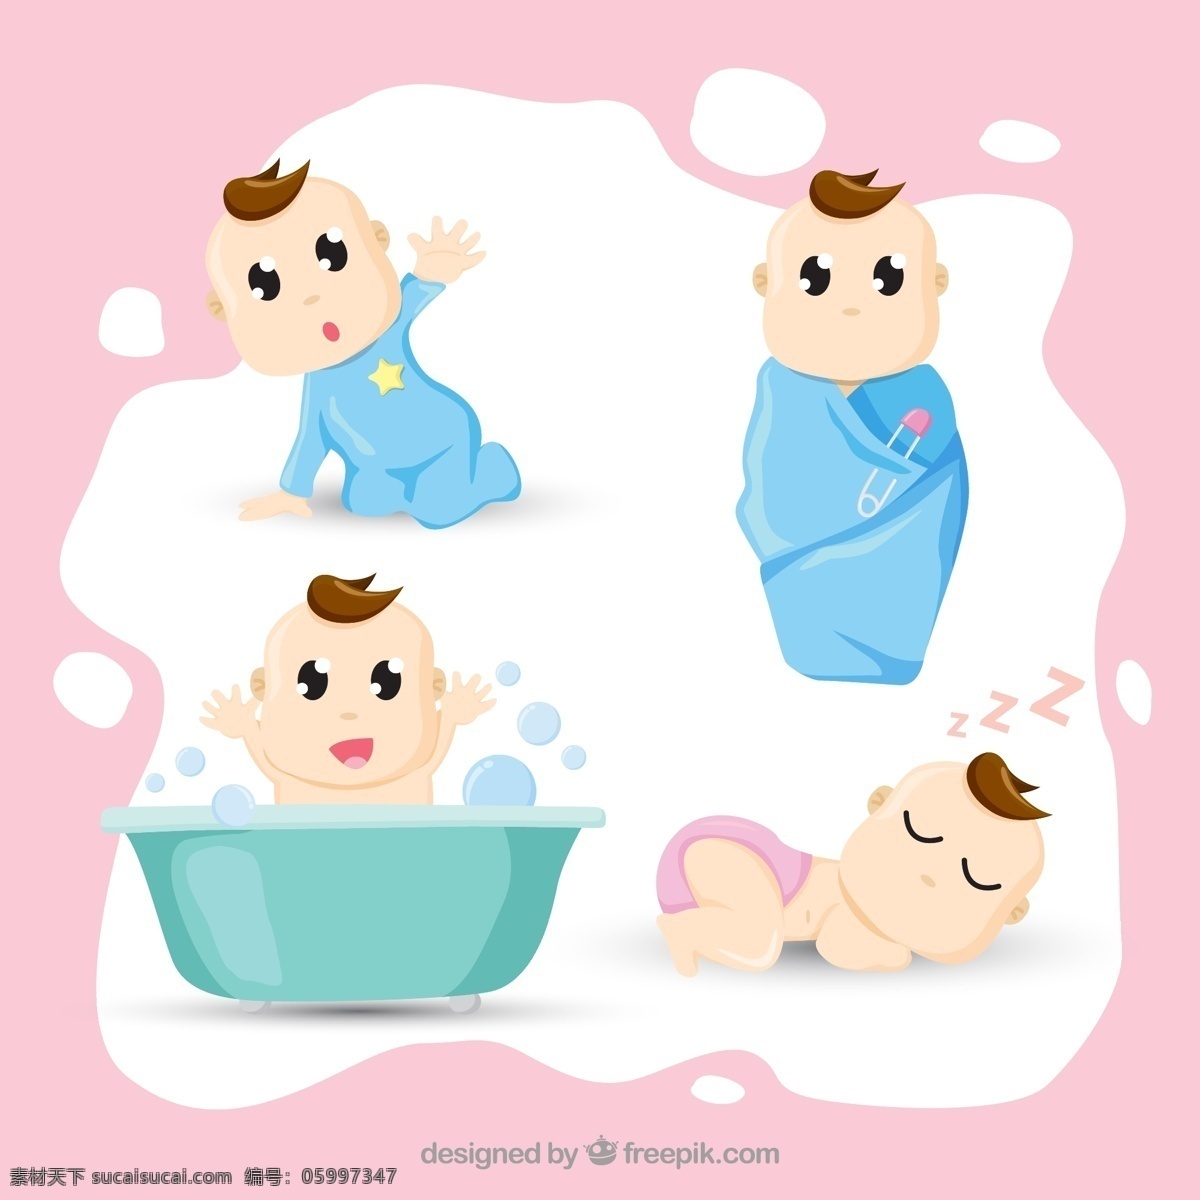 可爱的宝宝 背景 宝贝 沐浴 卡通 快乐 可爱 儿童 庆典 婴儿 插图 淋浴 客厅 美观 集 尿布 微笑 蹒跚学步 性格开朗 小